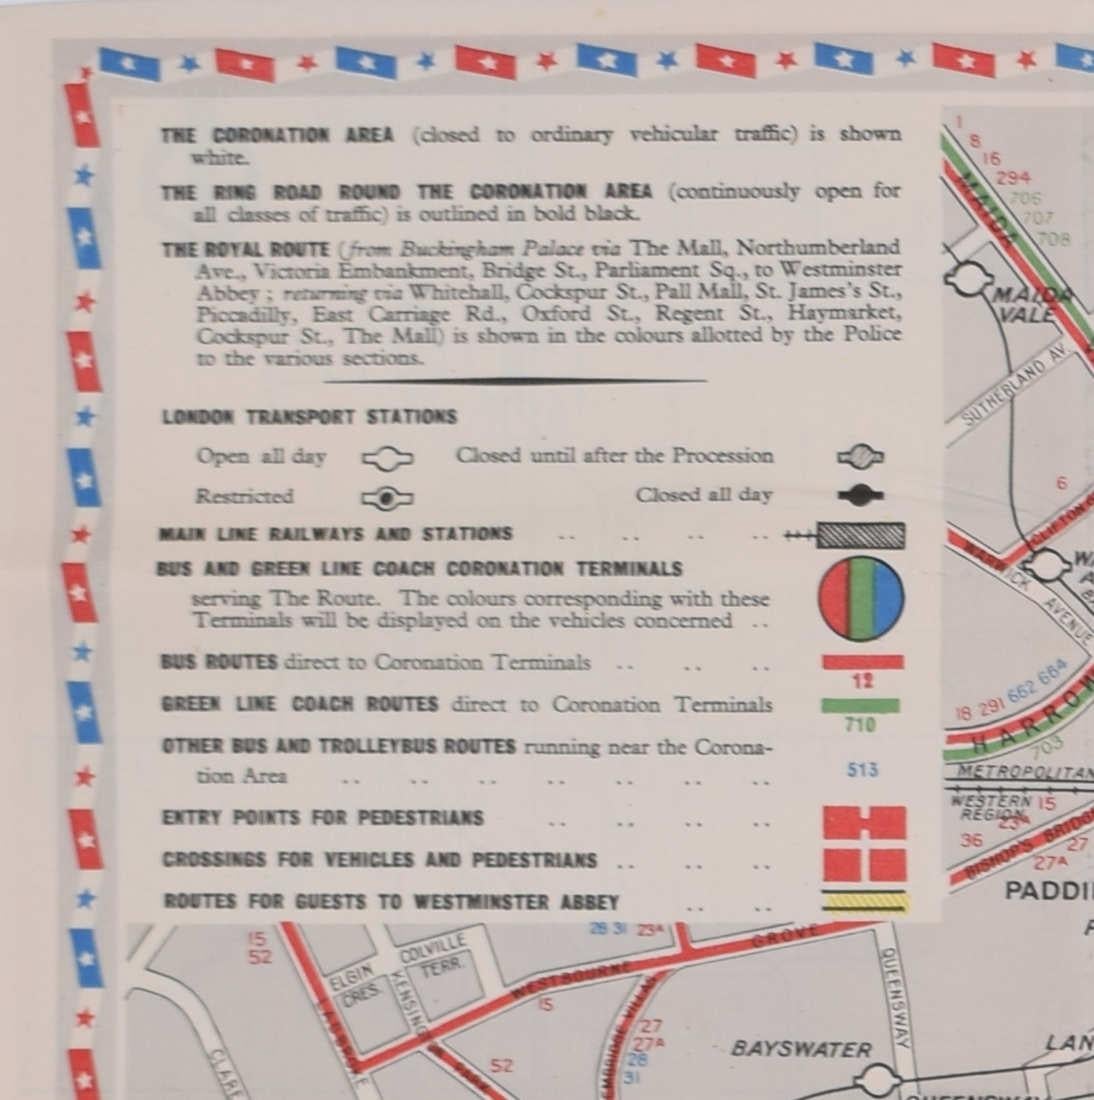 Coronation Map für Londoner Transport, 1953 – Print von Unknown